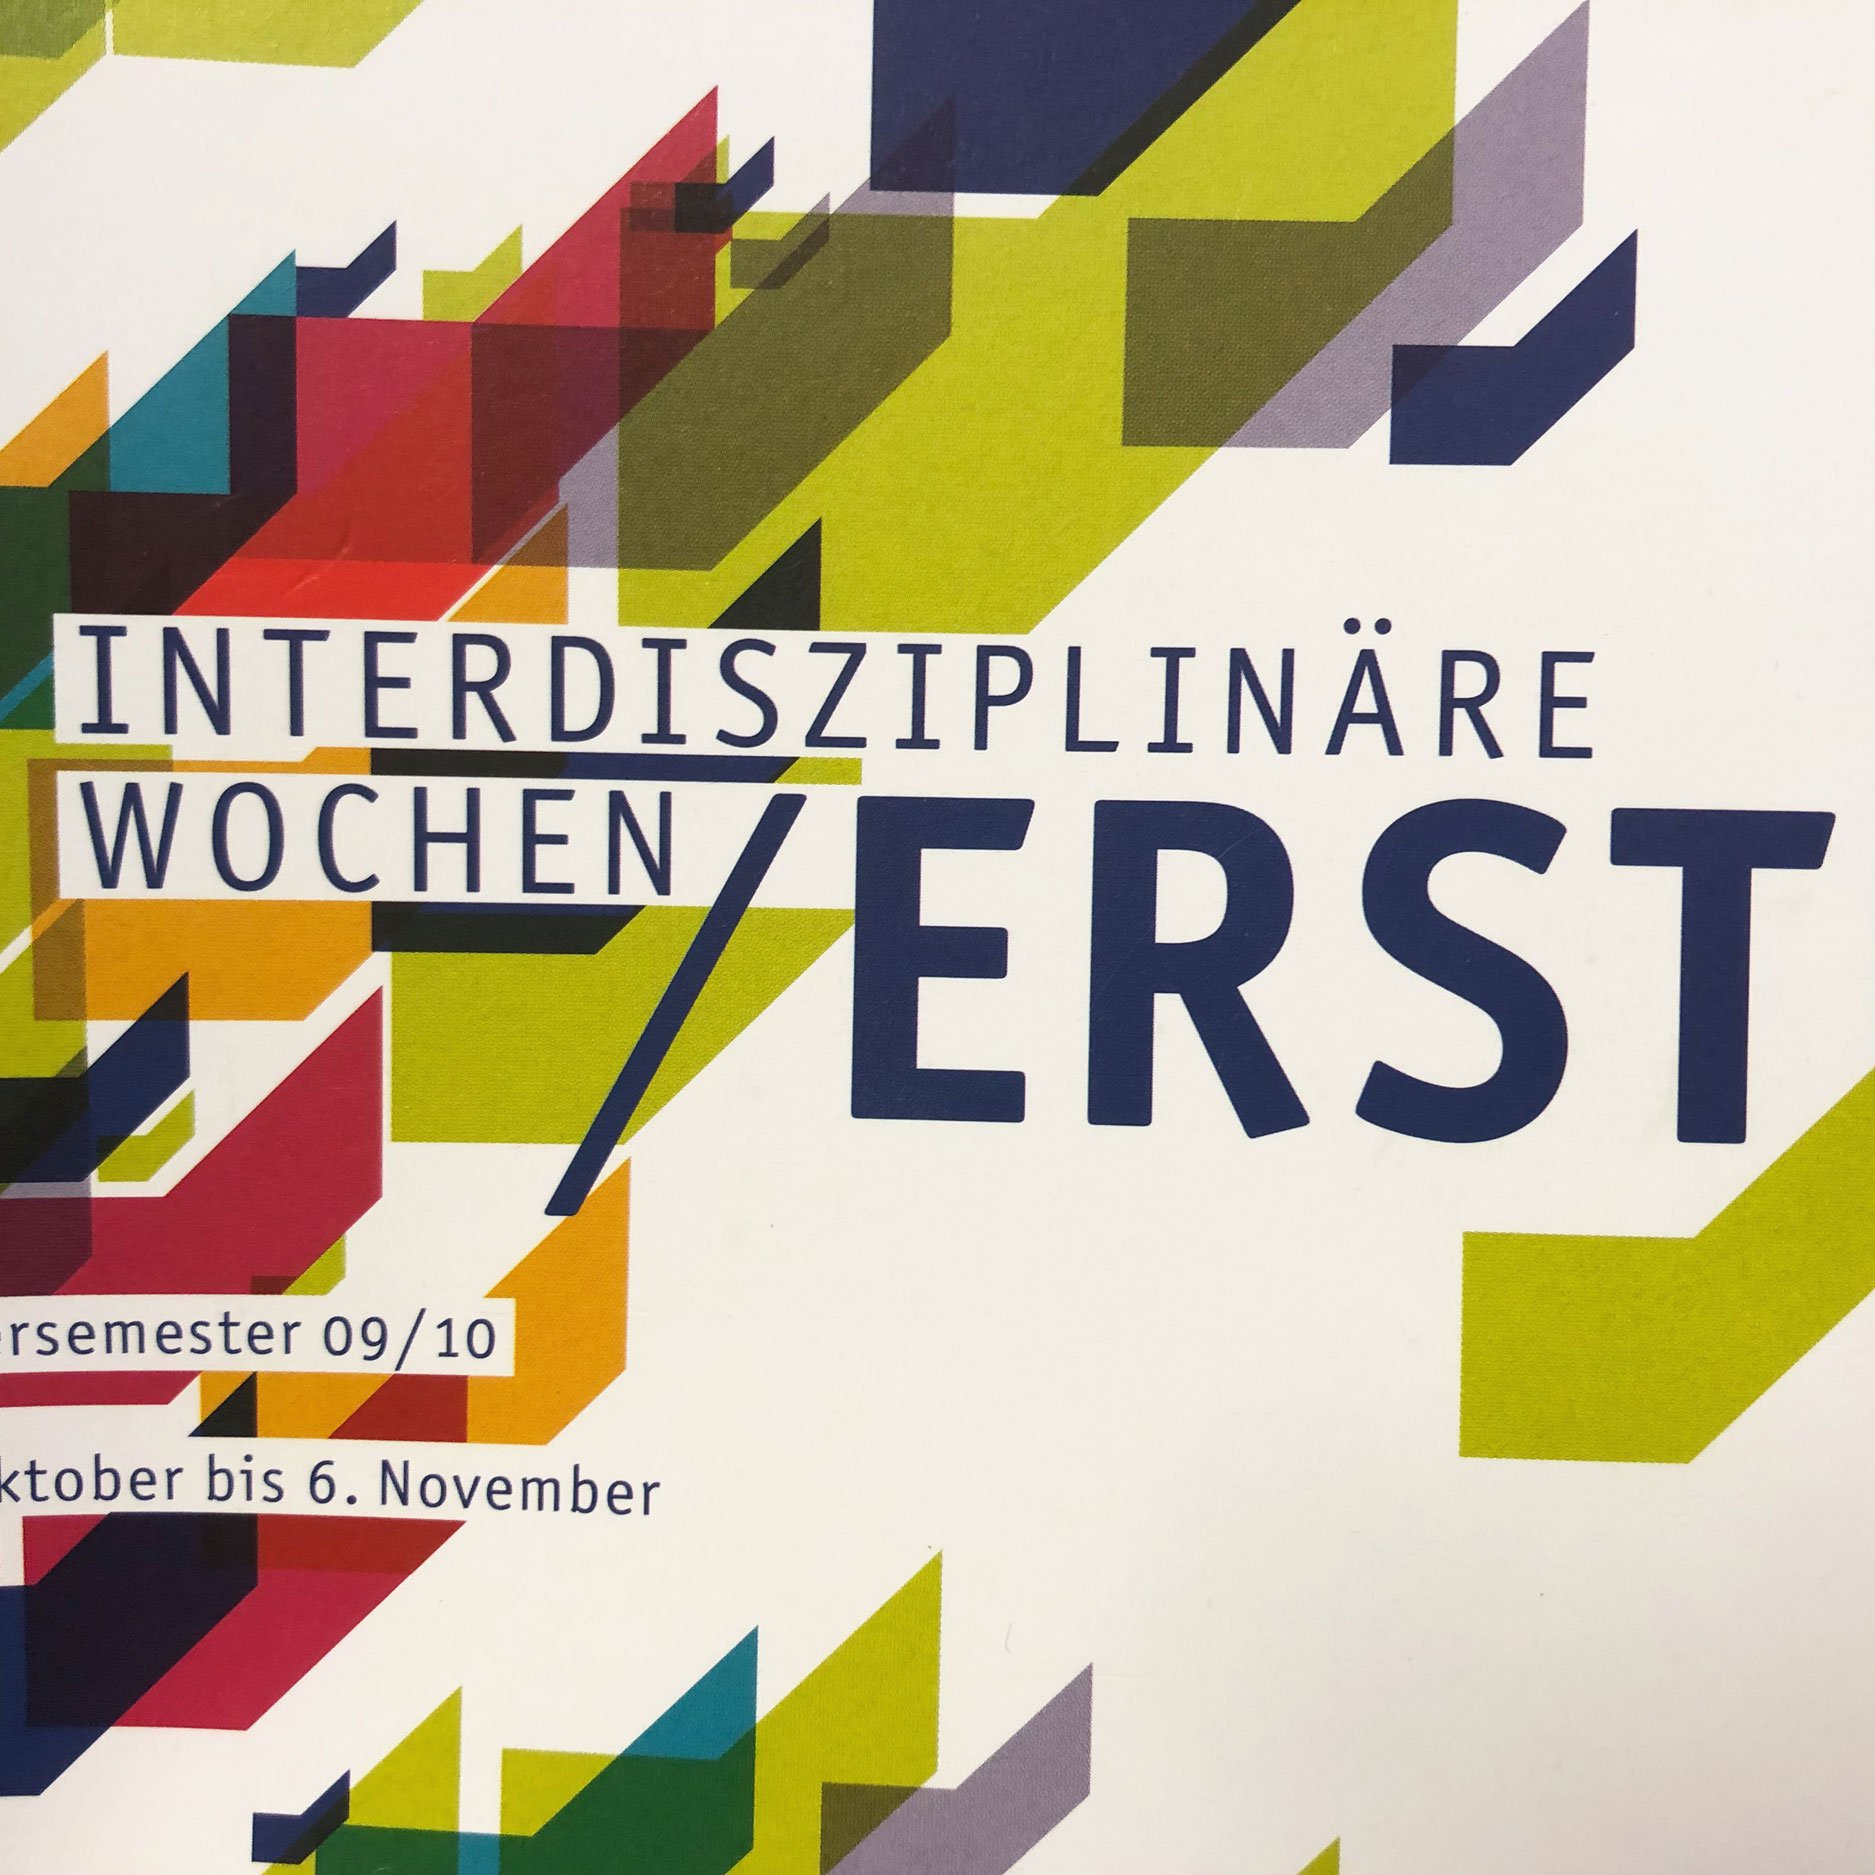 Logo der ersten Interdisziplinären Wochen